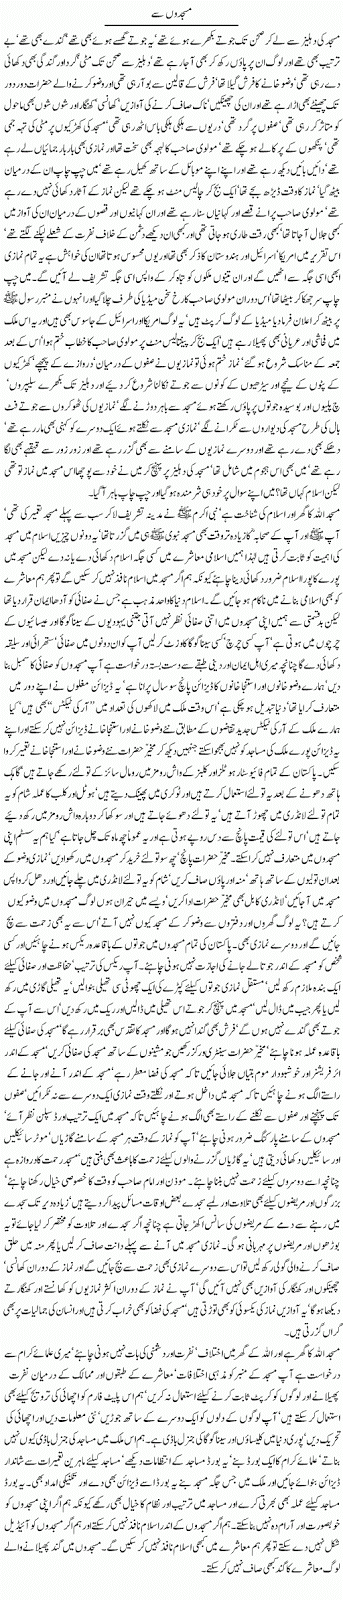 urdu columns online